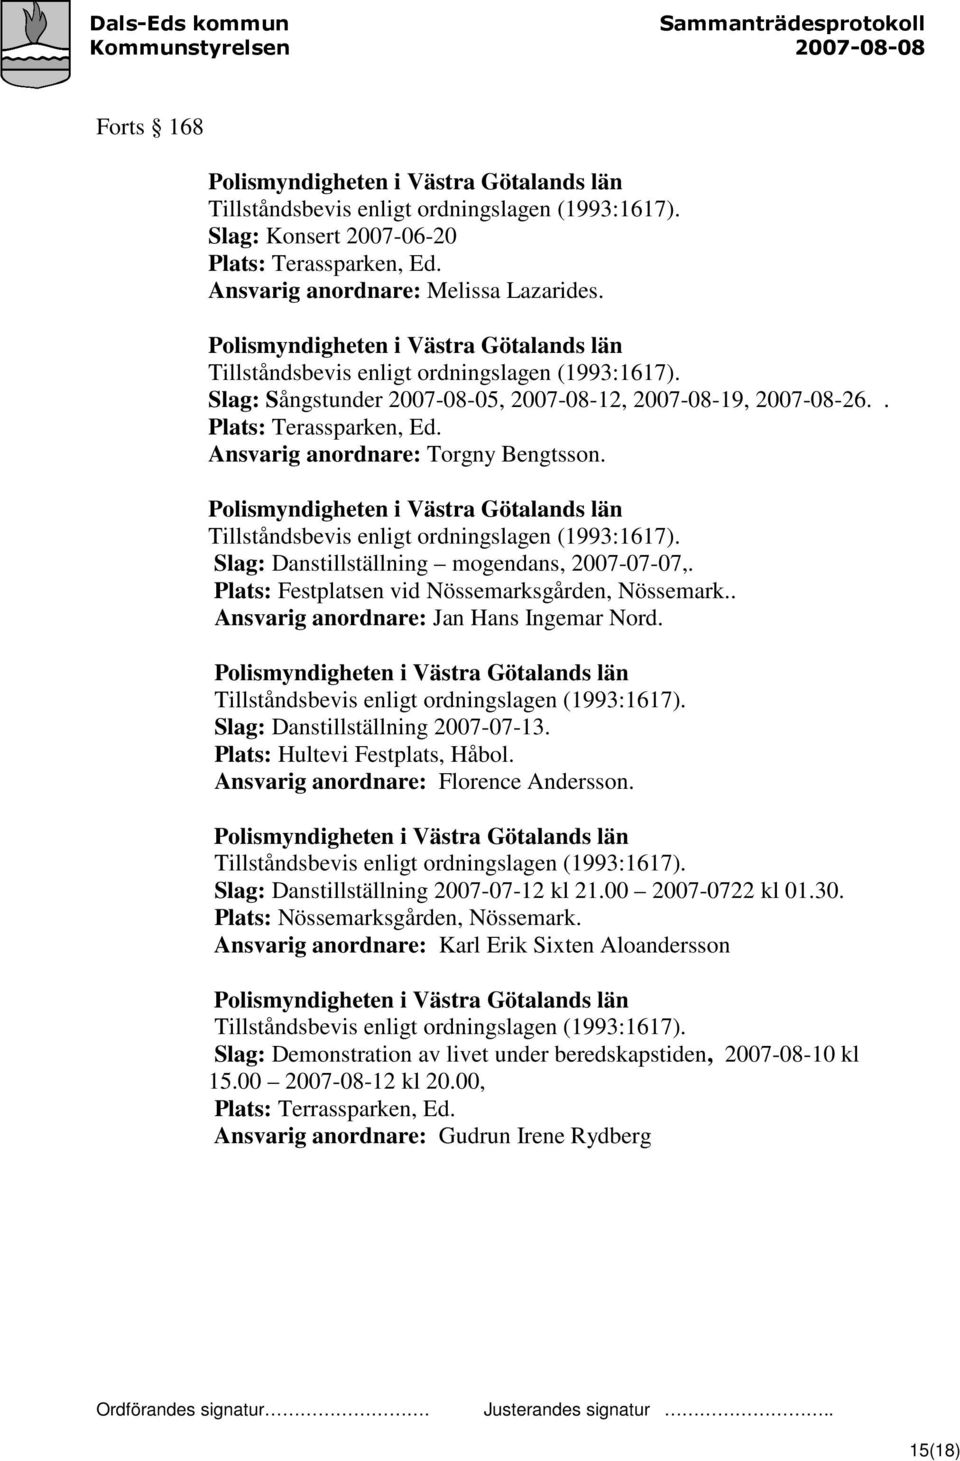 Ansvarig anordnare: Torgny Bengtsson. Polismyndigheten i Västra Götalands län Tillståndsbevis enligt ordningslagen (1993:1617). Slag: Danstillställning mogendans, 2007-07-07,.